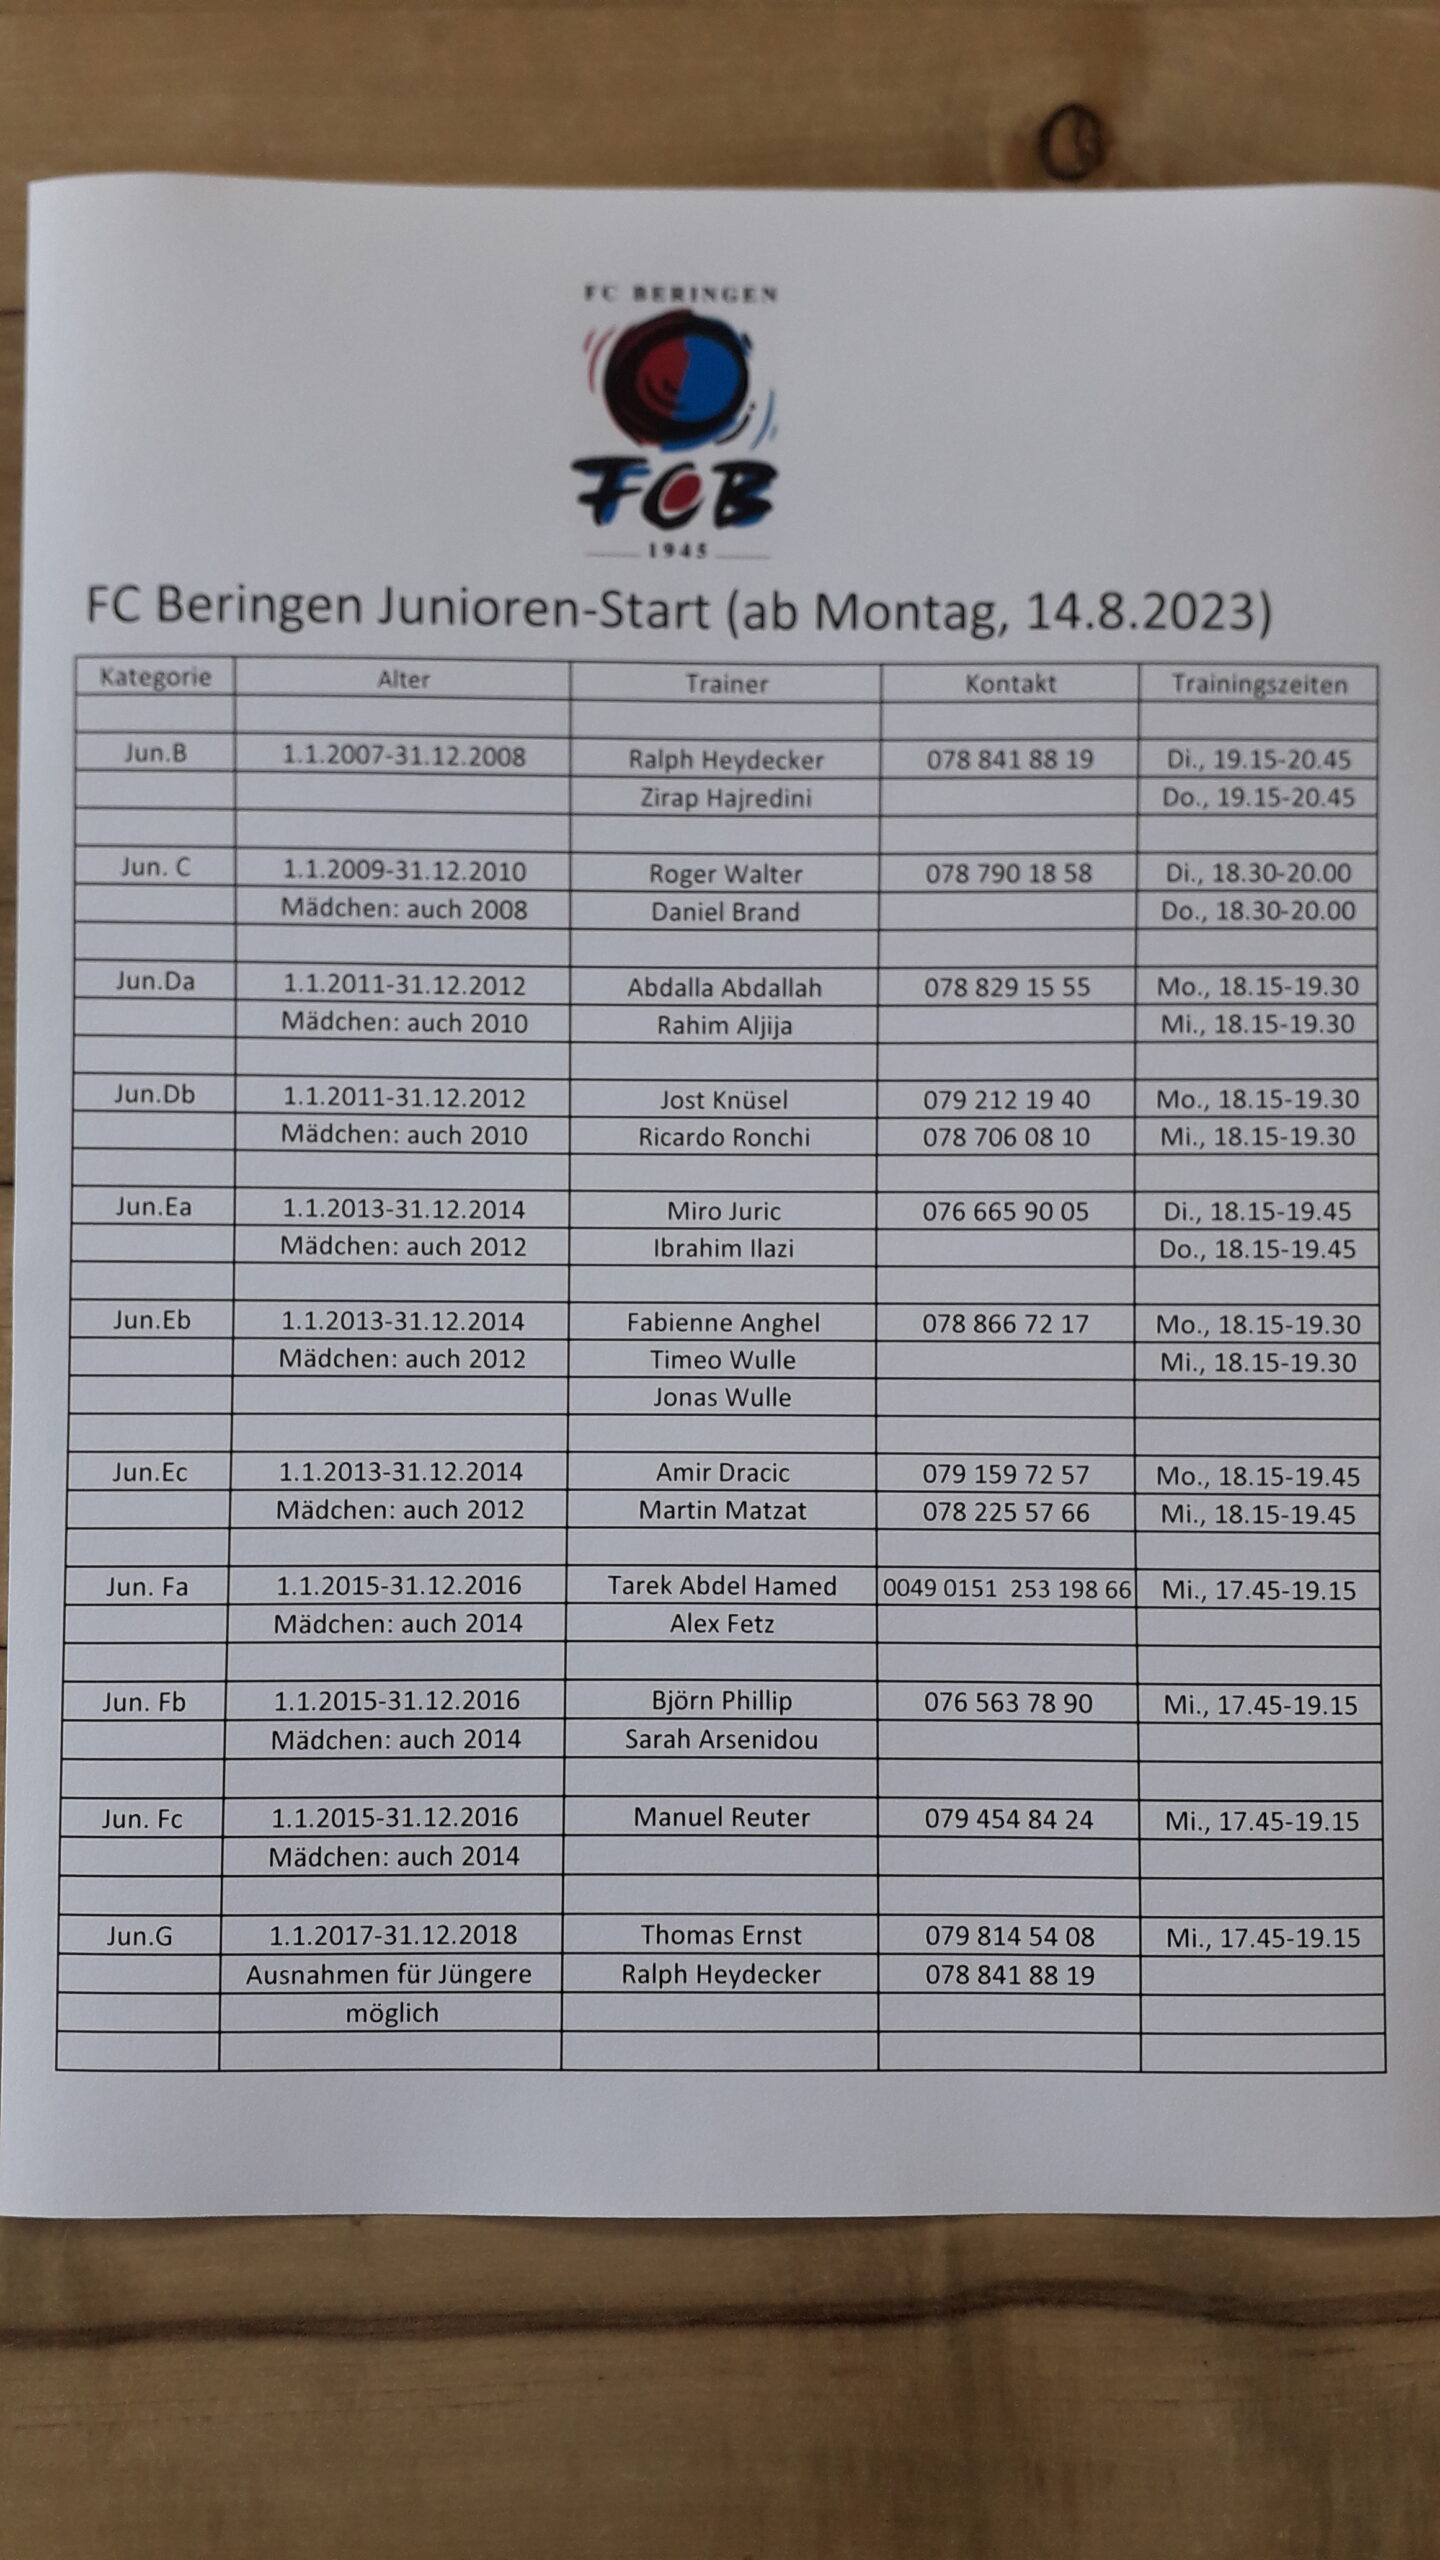 FC Beringen Junioren Start 14.8.2023